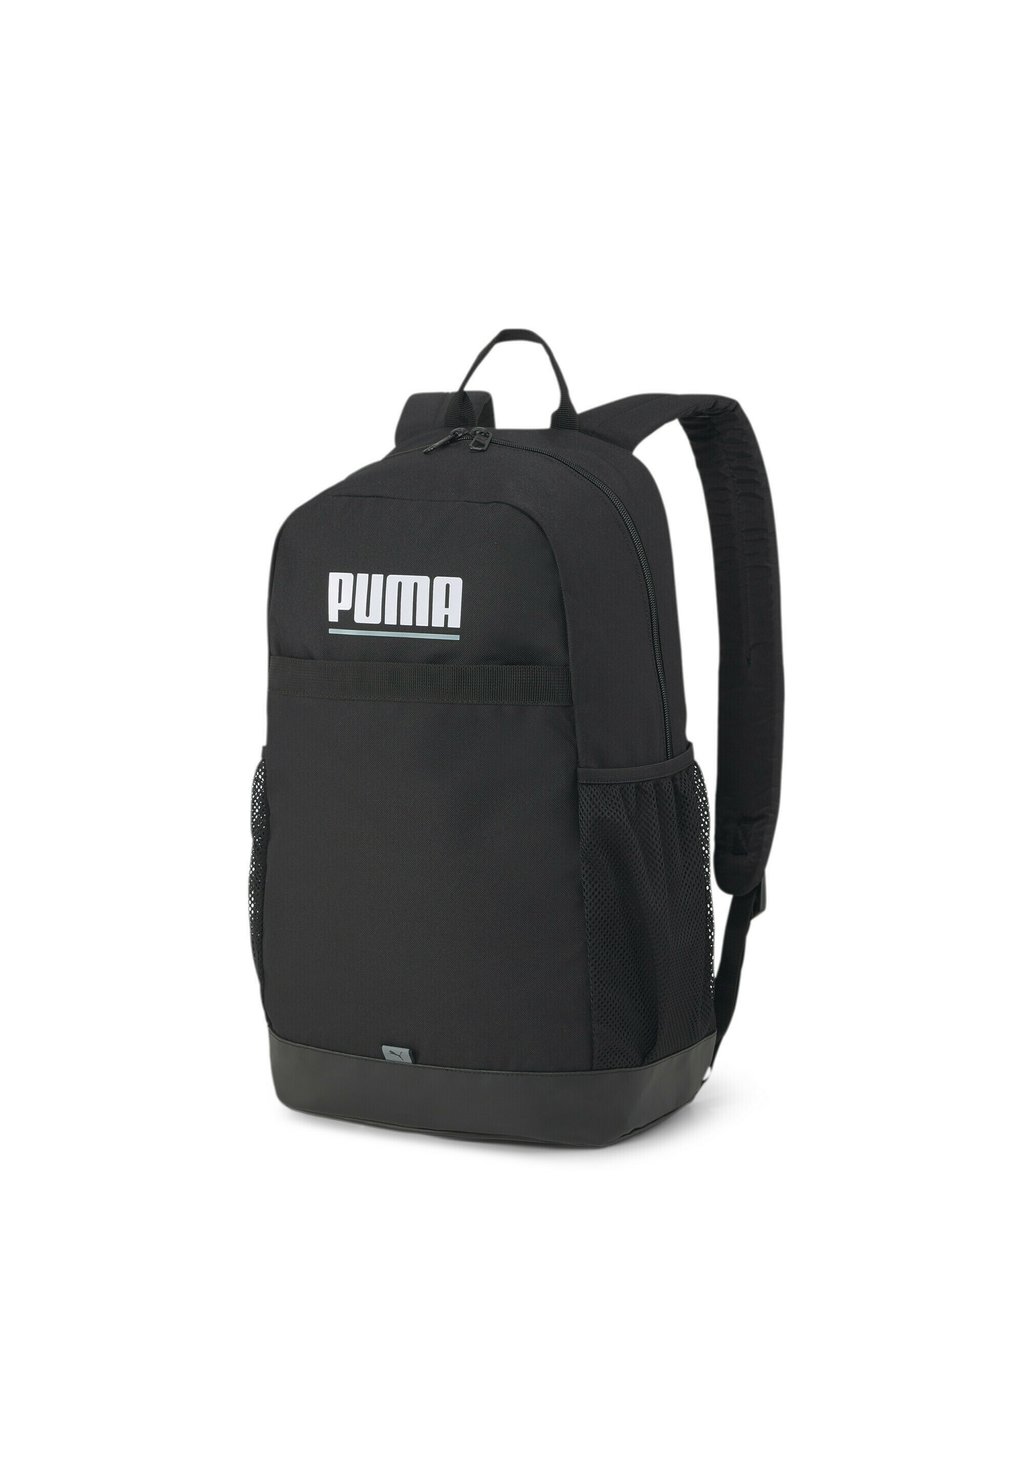 Рюкзак для путешествий Puma Plus, чёрный водостойкий рюкзак wiwu для ноутбука elites backpack серый